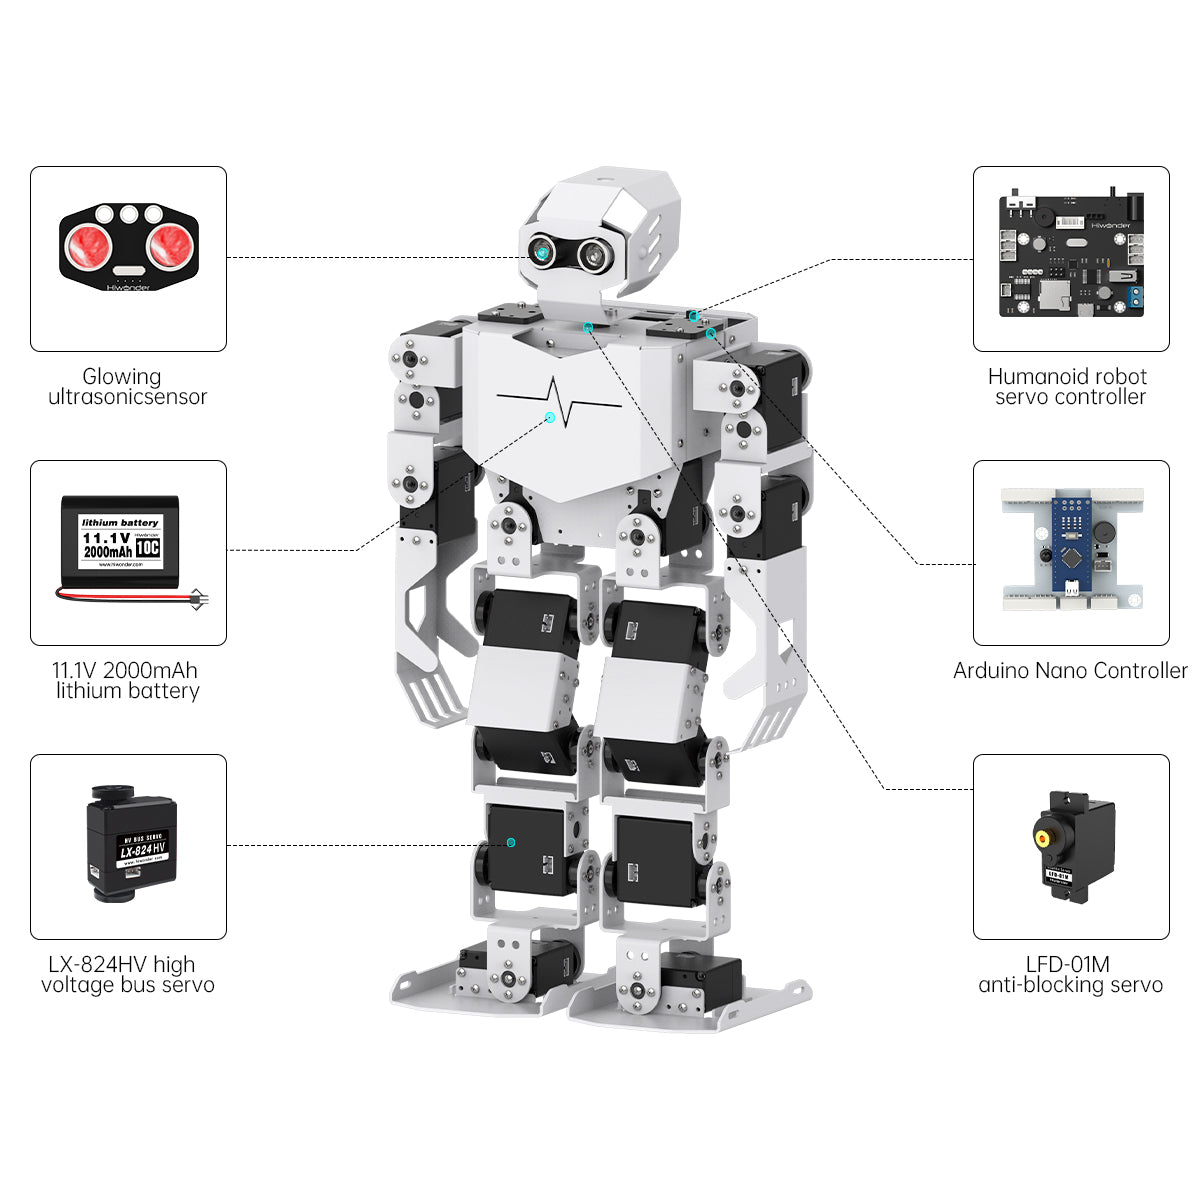 Tonybot: Hiwonder Humanoid Robot Educational Programming Kit/Arduino